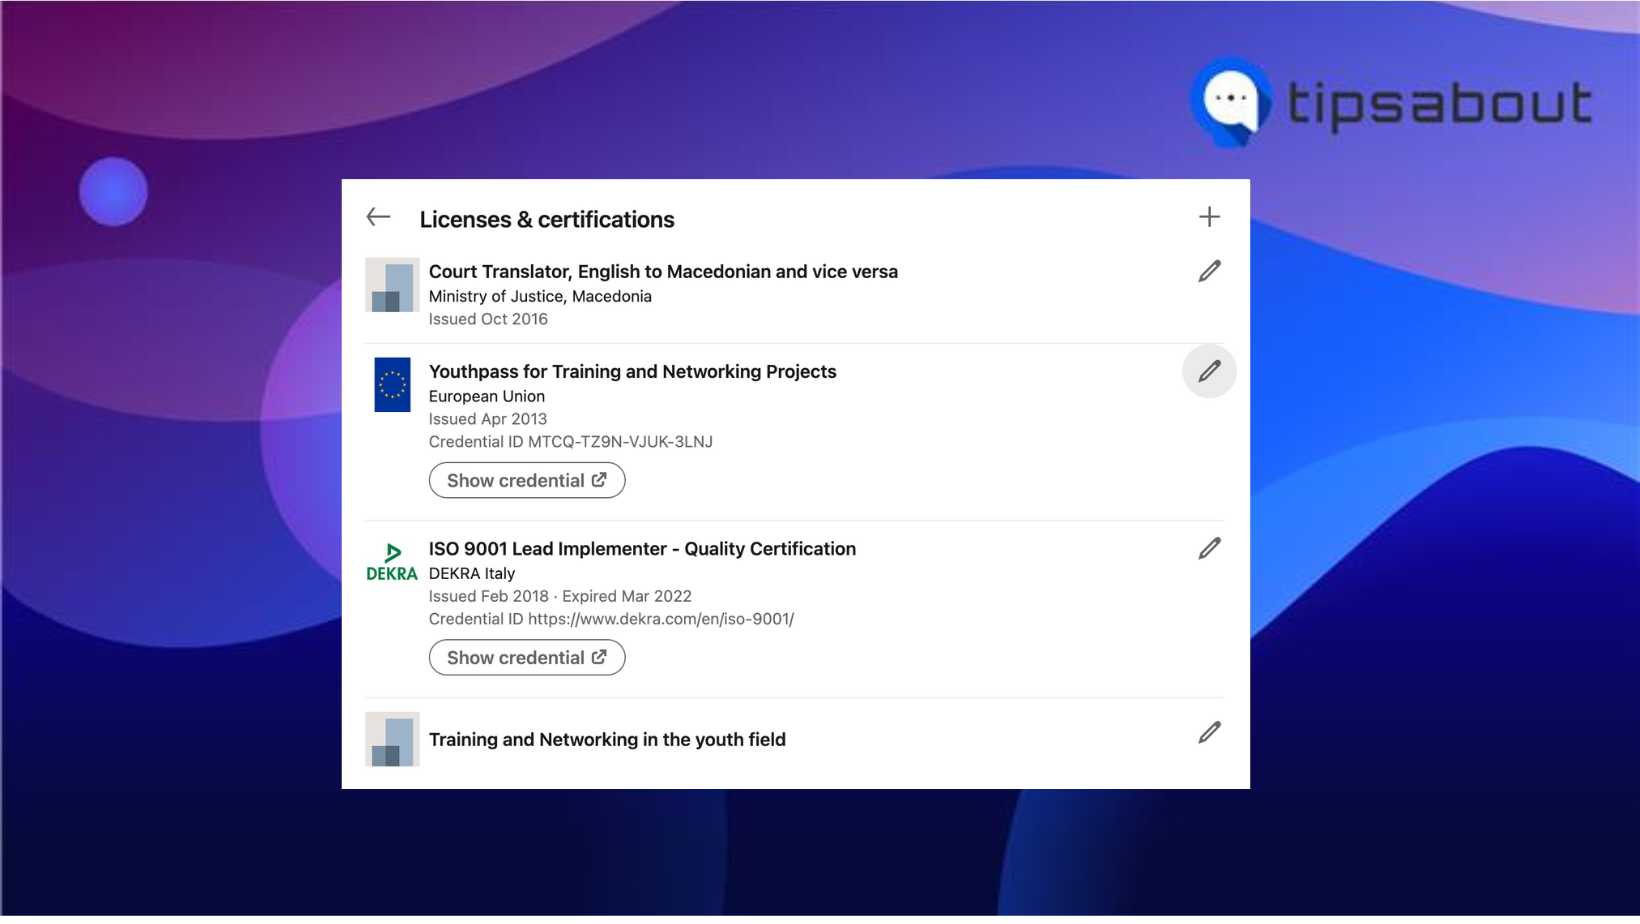 Licenses & certifications option on LinkedIn desktop